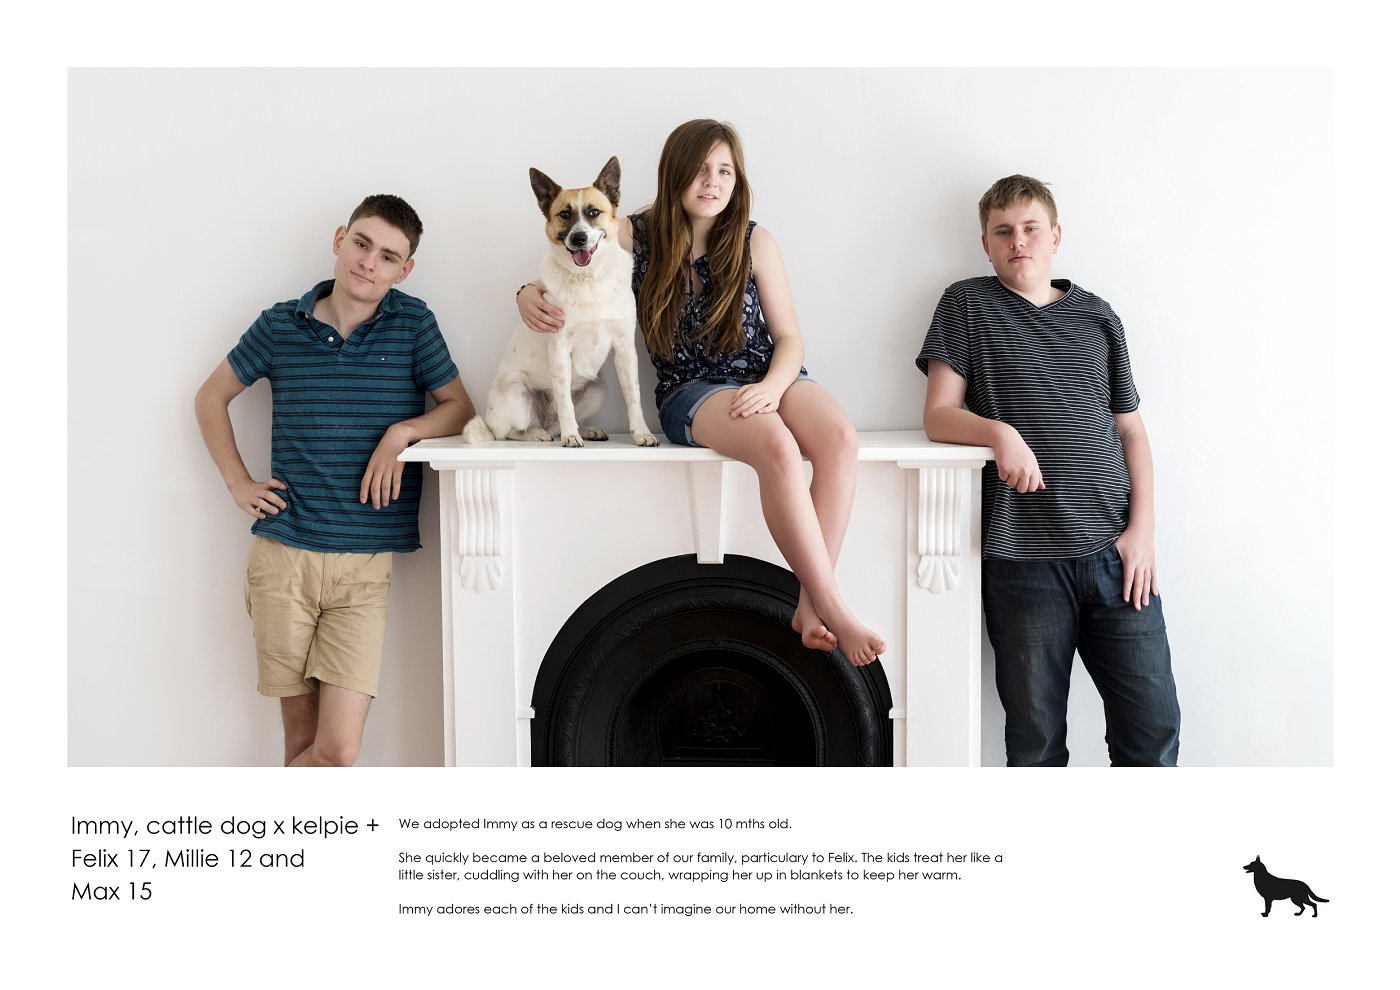 studio dog and kids portrait photographer